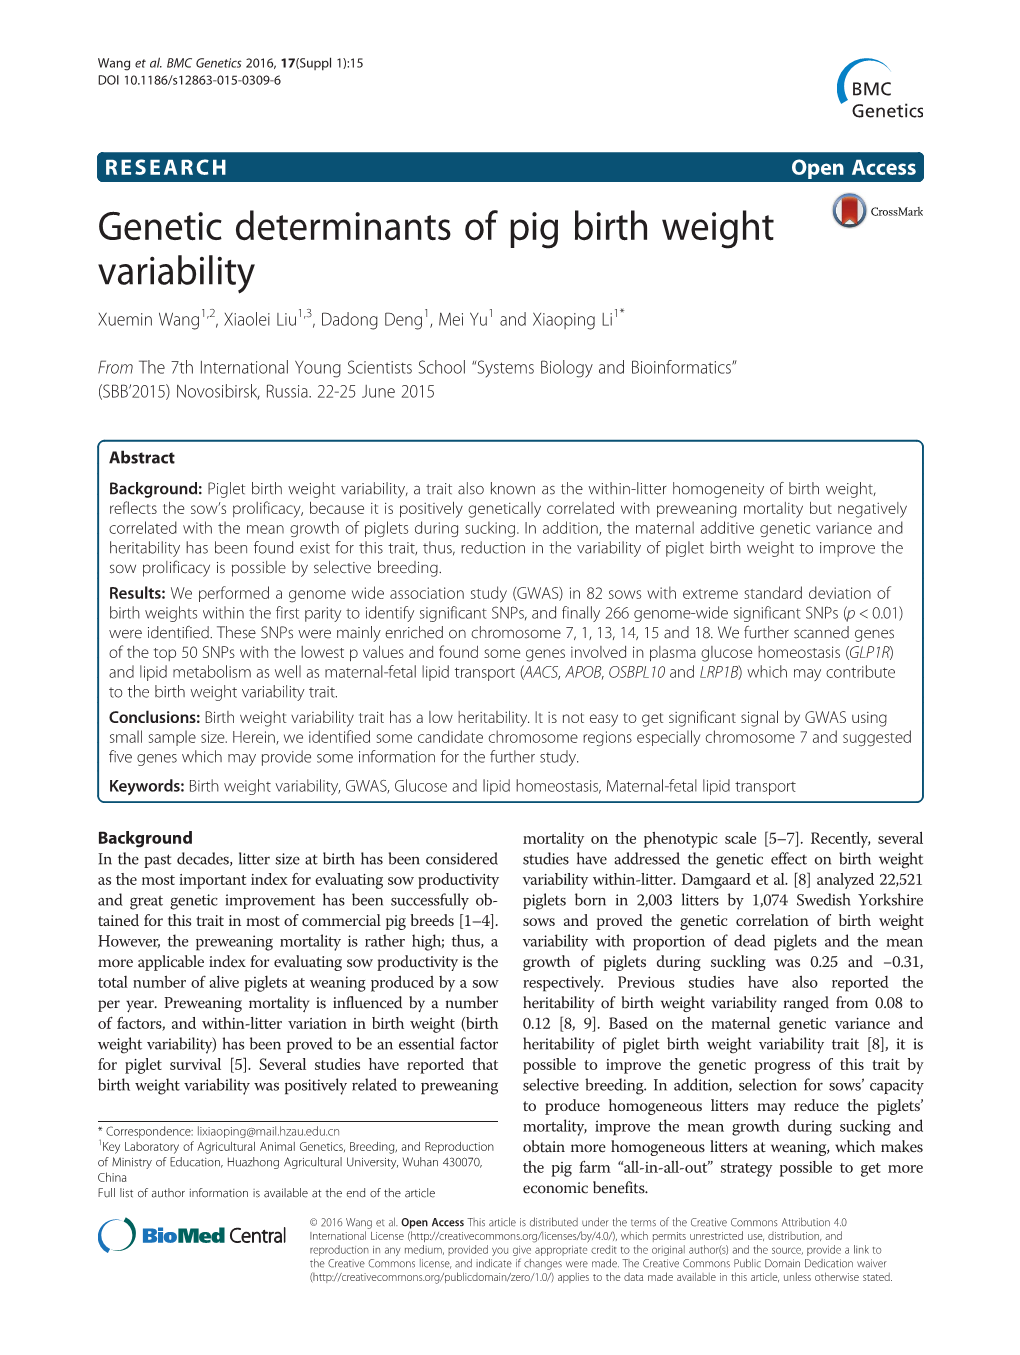 Genetic Determinants of Pig Birth Weight Variability Xuemin Wang1,2, Xiaolei Liu1,3, Dadong Deng1, Mei Yu1 and Xiaoping Li1*